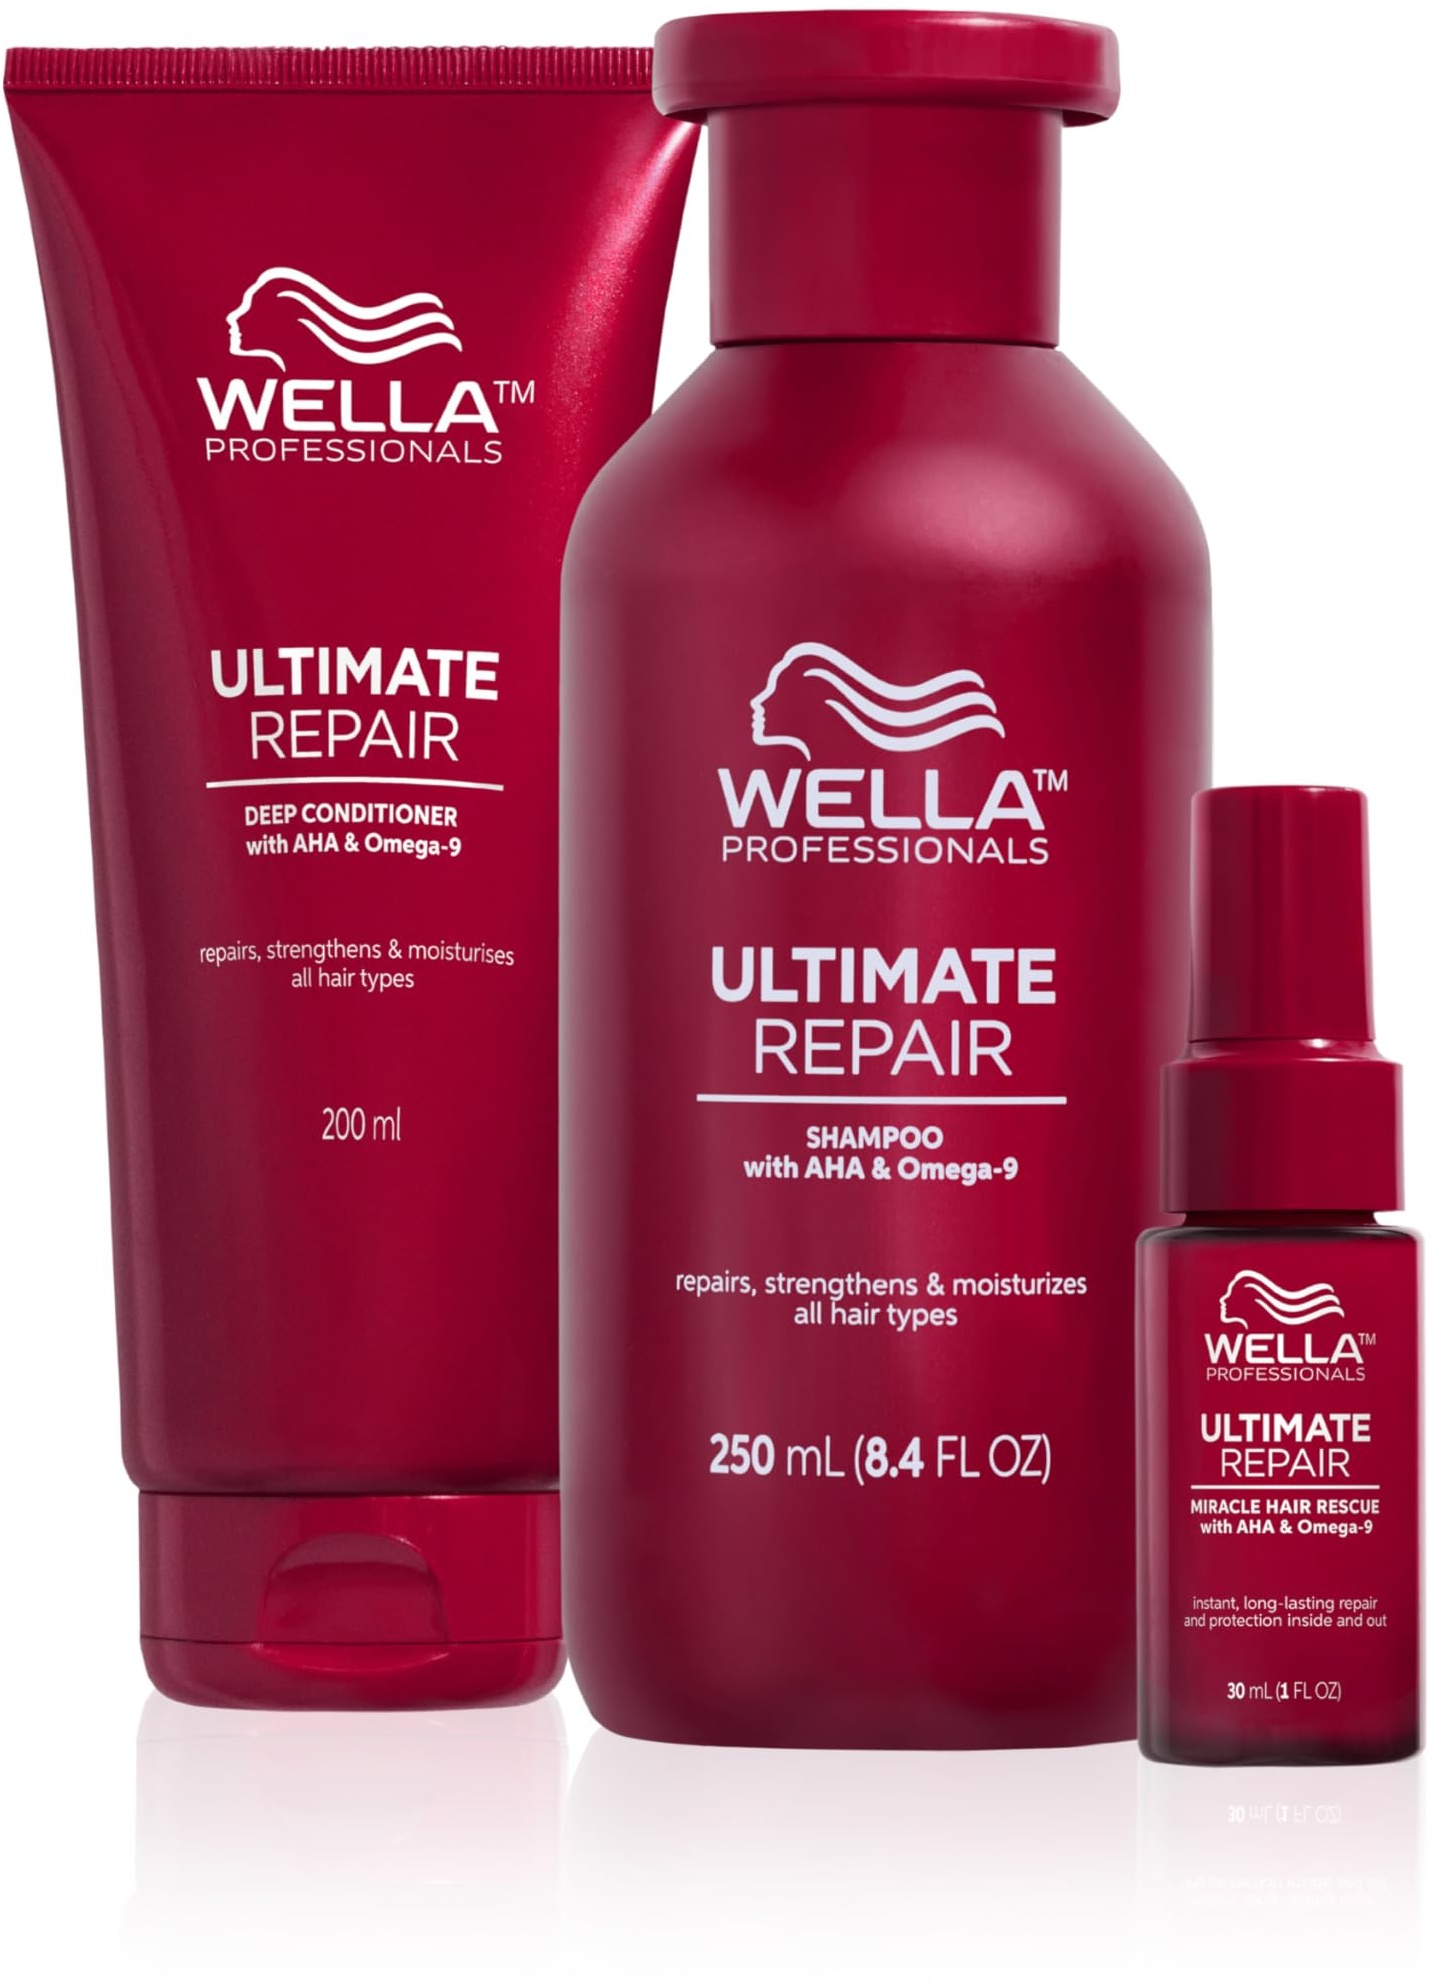 Wella Professionals Ultimate Repair Vorteils-Set – Repair Shampoo, stärkende Spülung & reparierendes 90 Sek. Haar Serum – 250 ml Feuchtigkeitsshampoo, 200 ml Conditioner, 30 ml Sprühkur